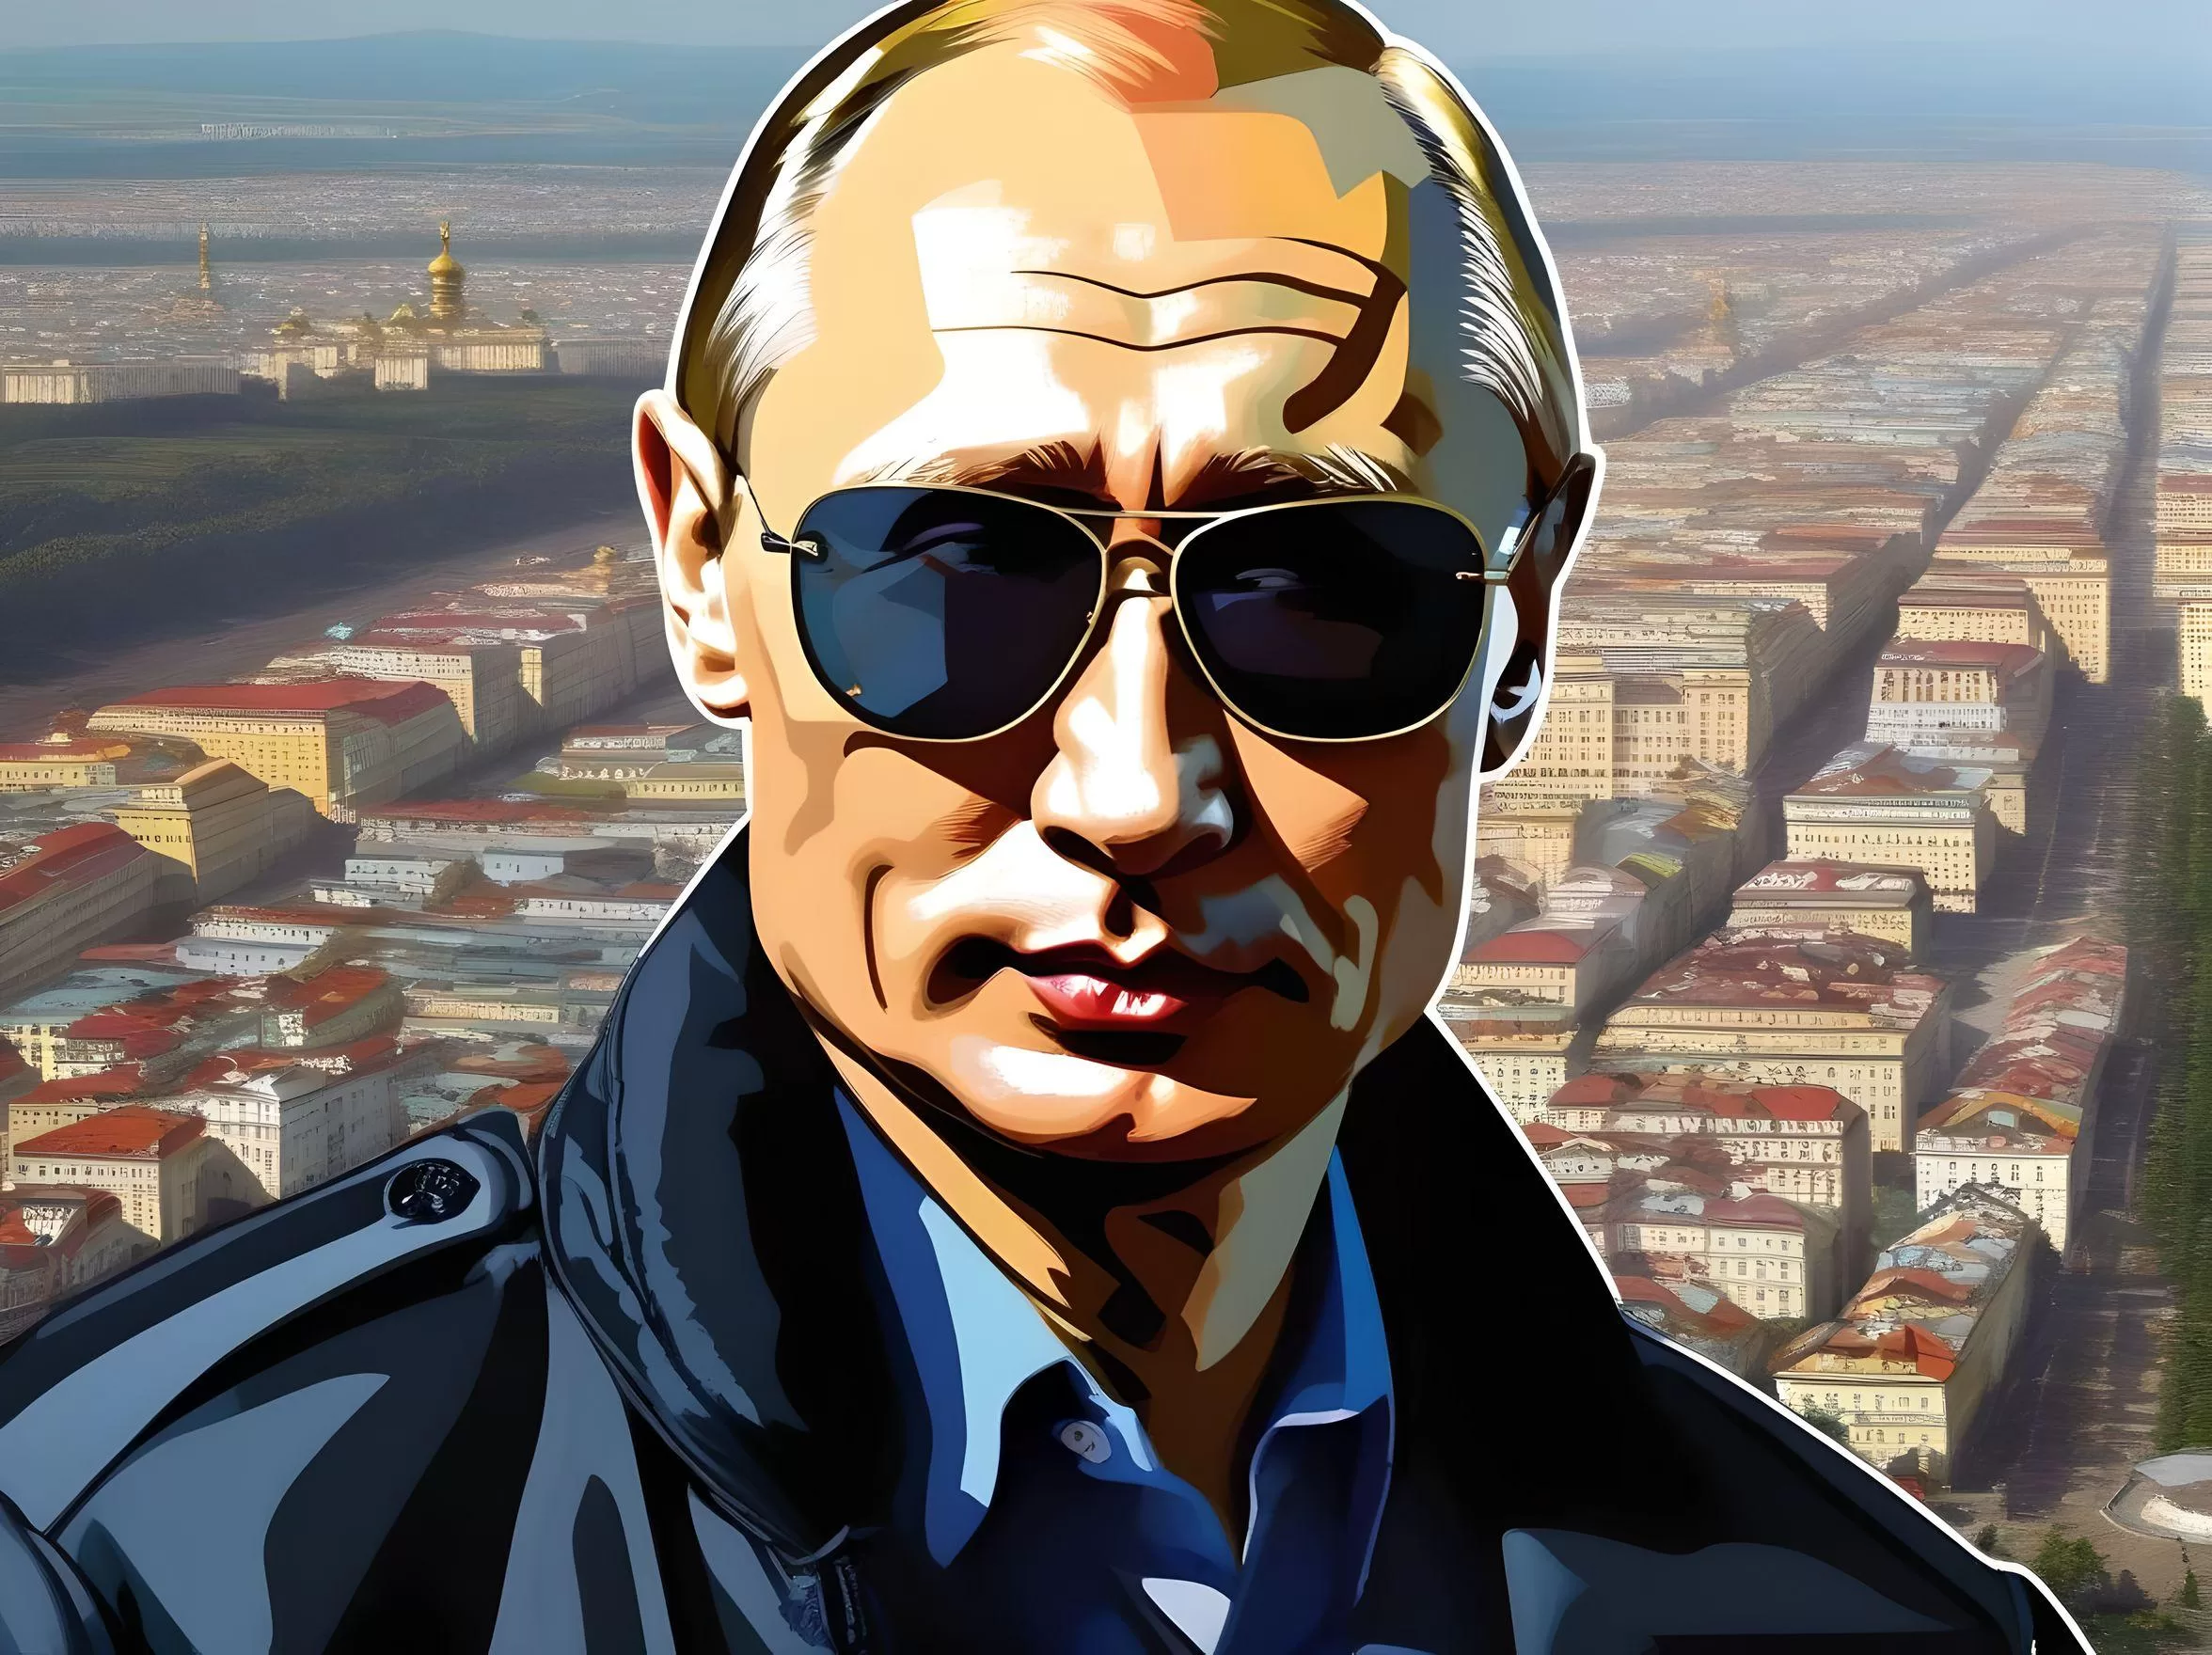 Vivat Putin!